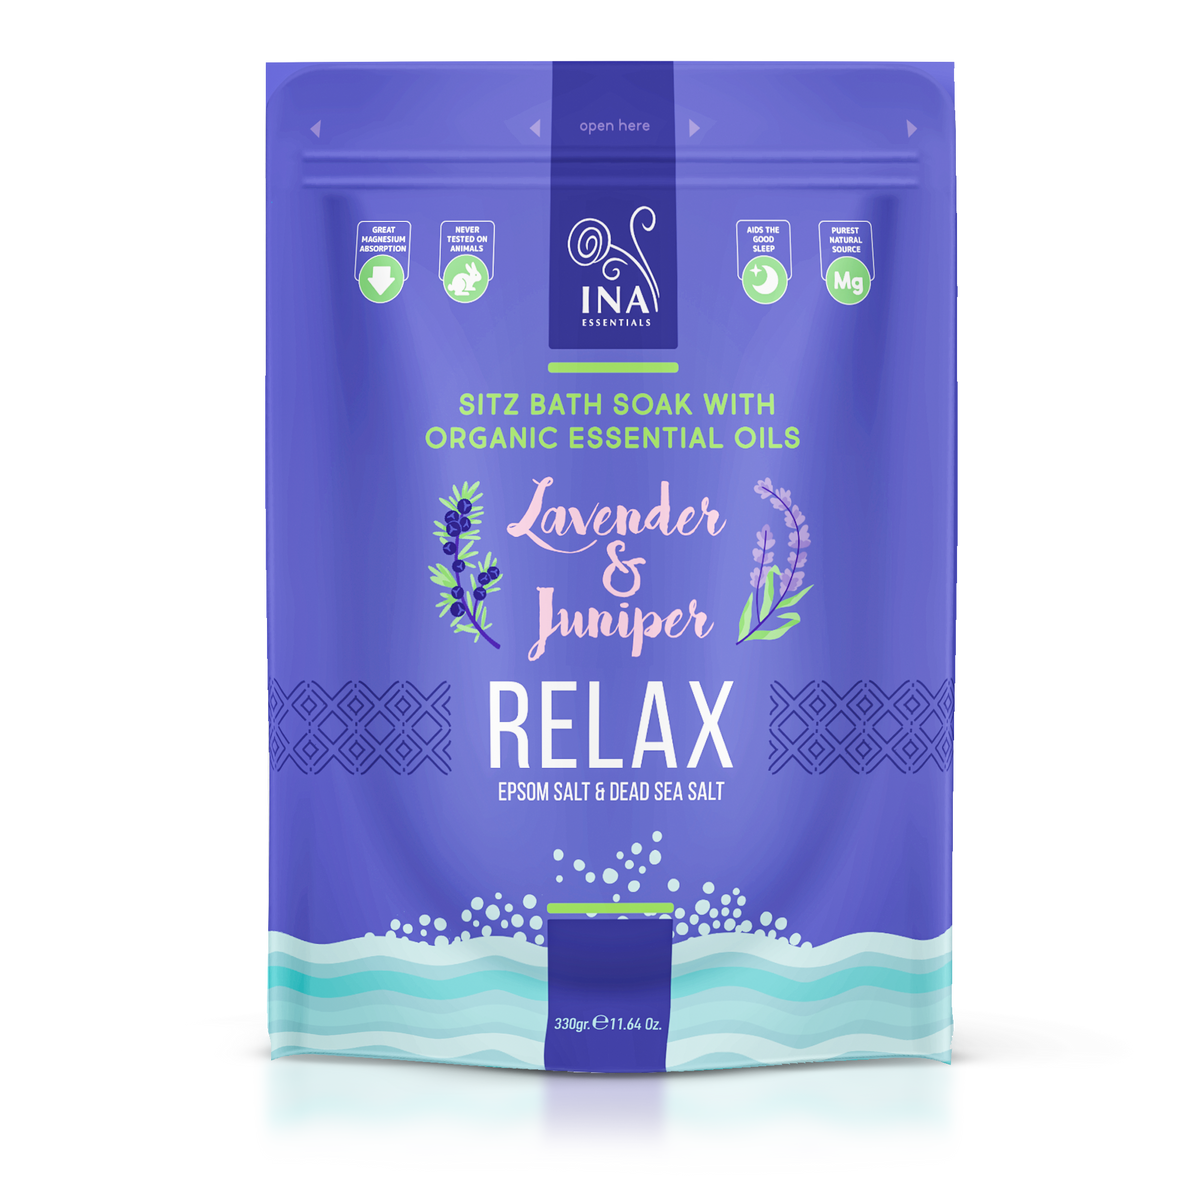 Sali da bagno Relax – Sitz con lavanda e ginepro per relax e sollievo dallo stress